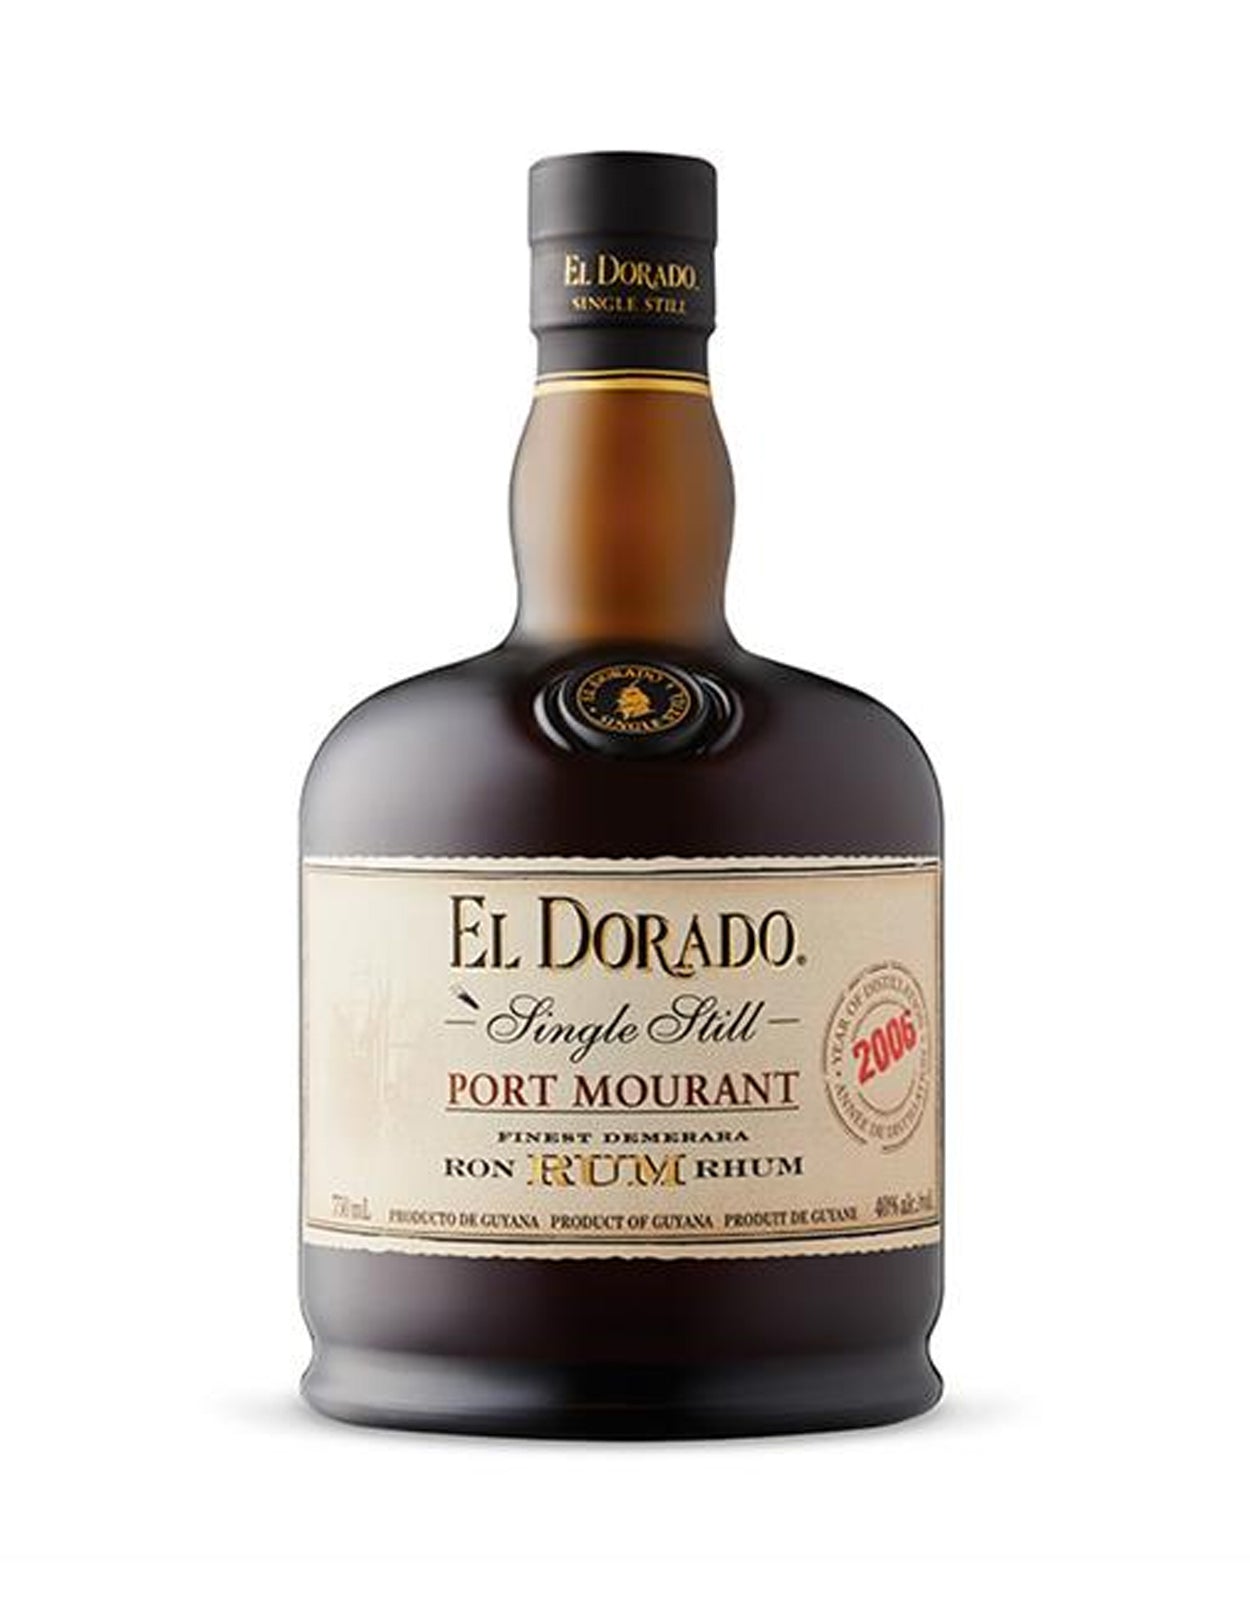 El Dorado Single Still Port Mourant 2006 Rum